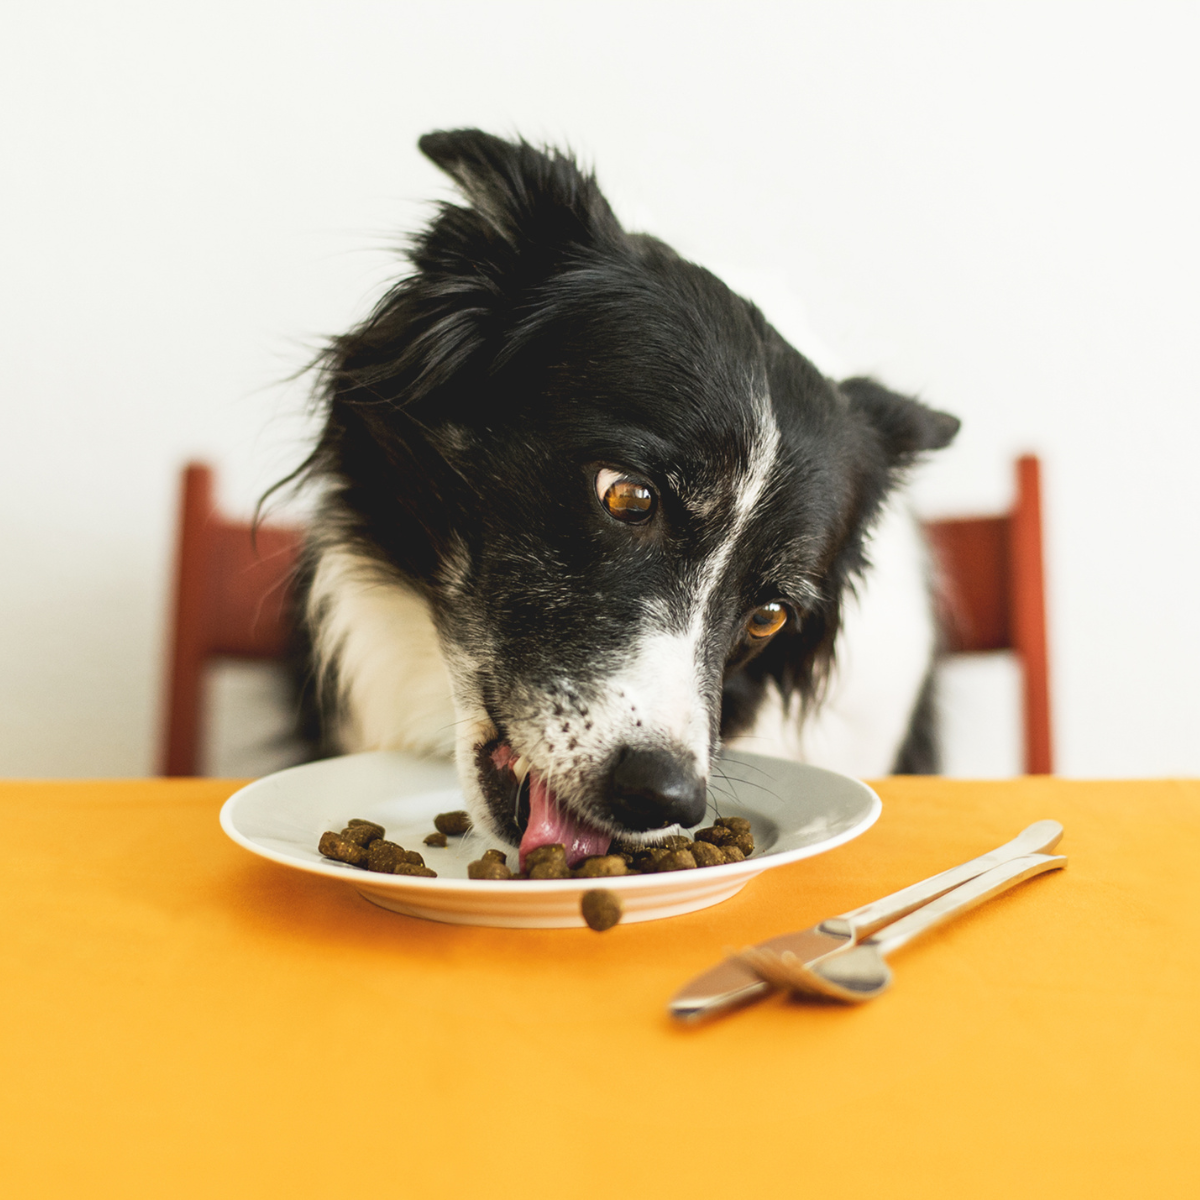 Dieser Beitrag zum Thema Trockenfutter aufpeppen für Hunde soll euch zeigen, wie man das beste aus Trockenfutter rausholt um eine abwechslungsreiche Hunde-Ernährung deinem Vierbeiner zu bieten.